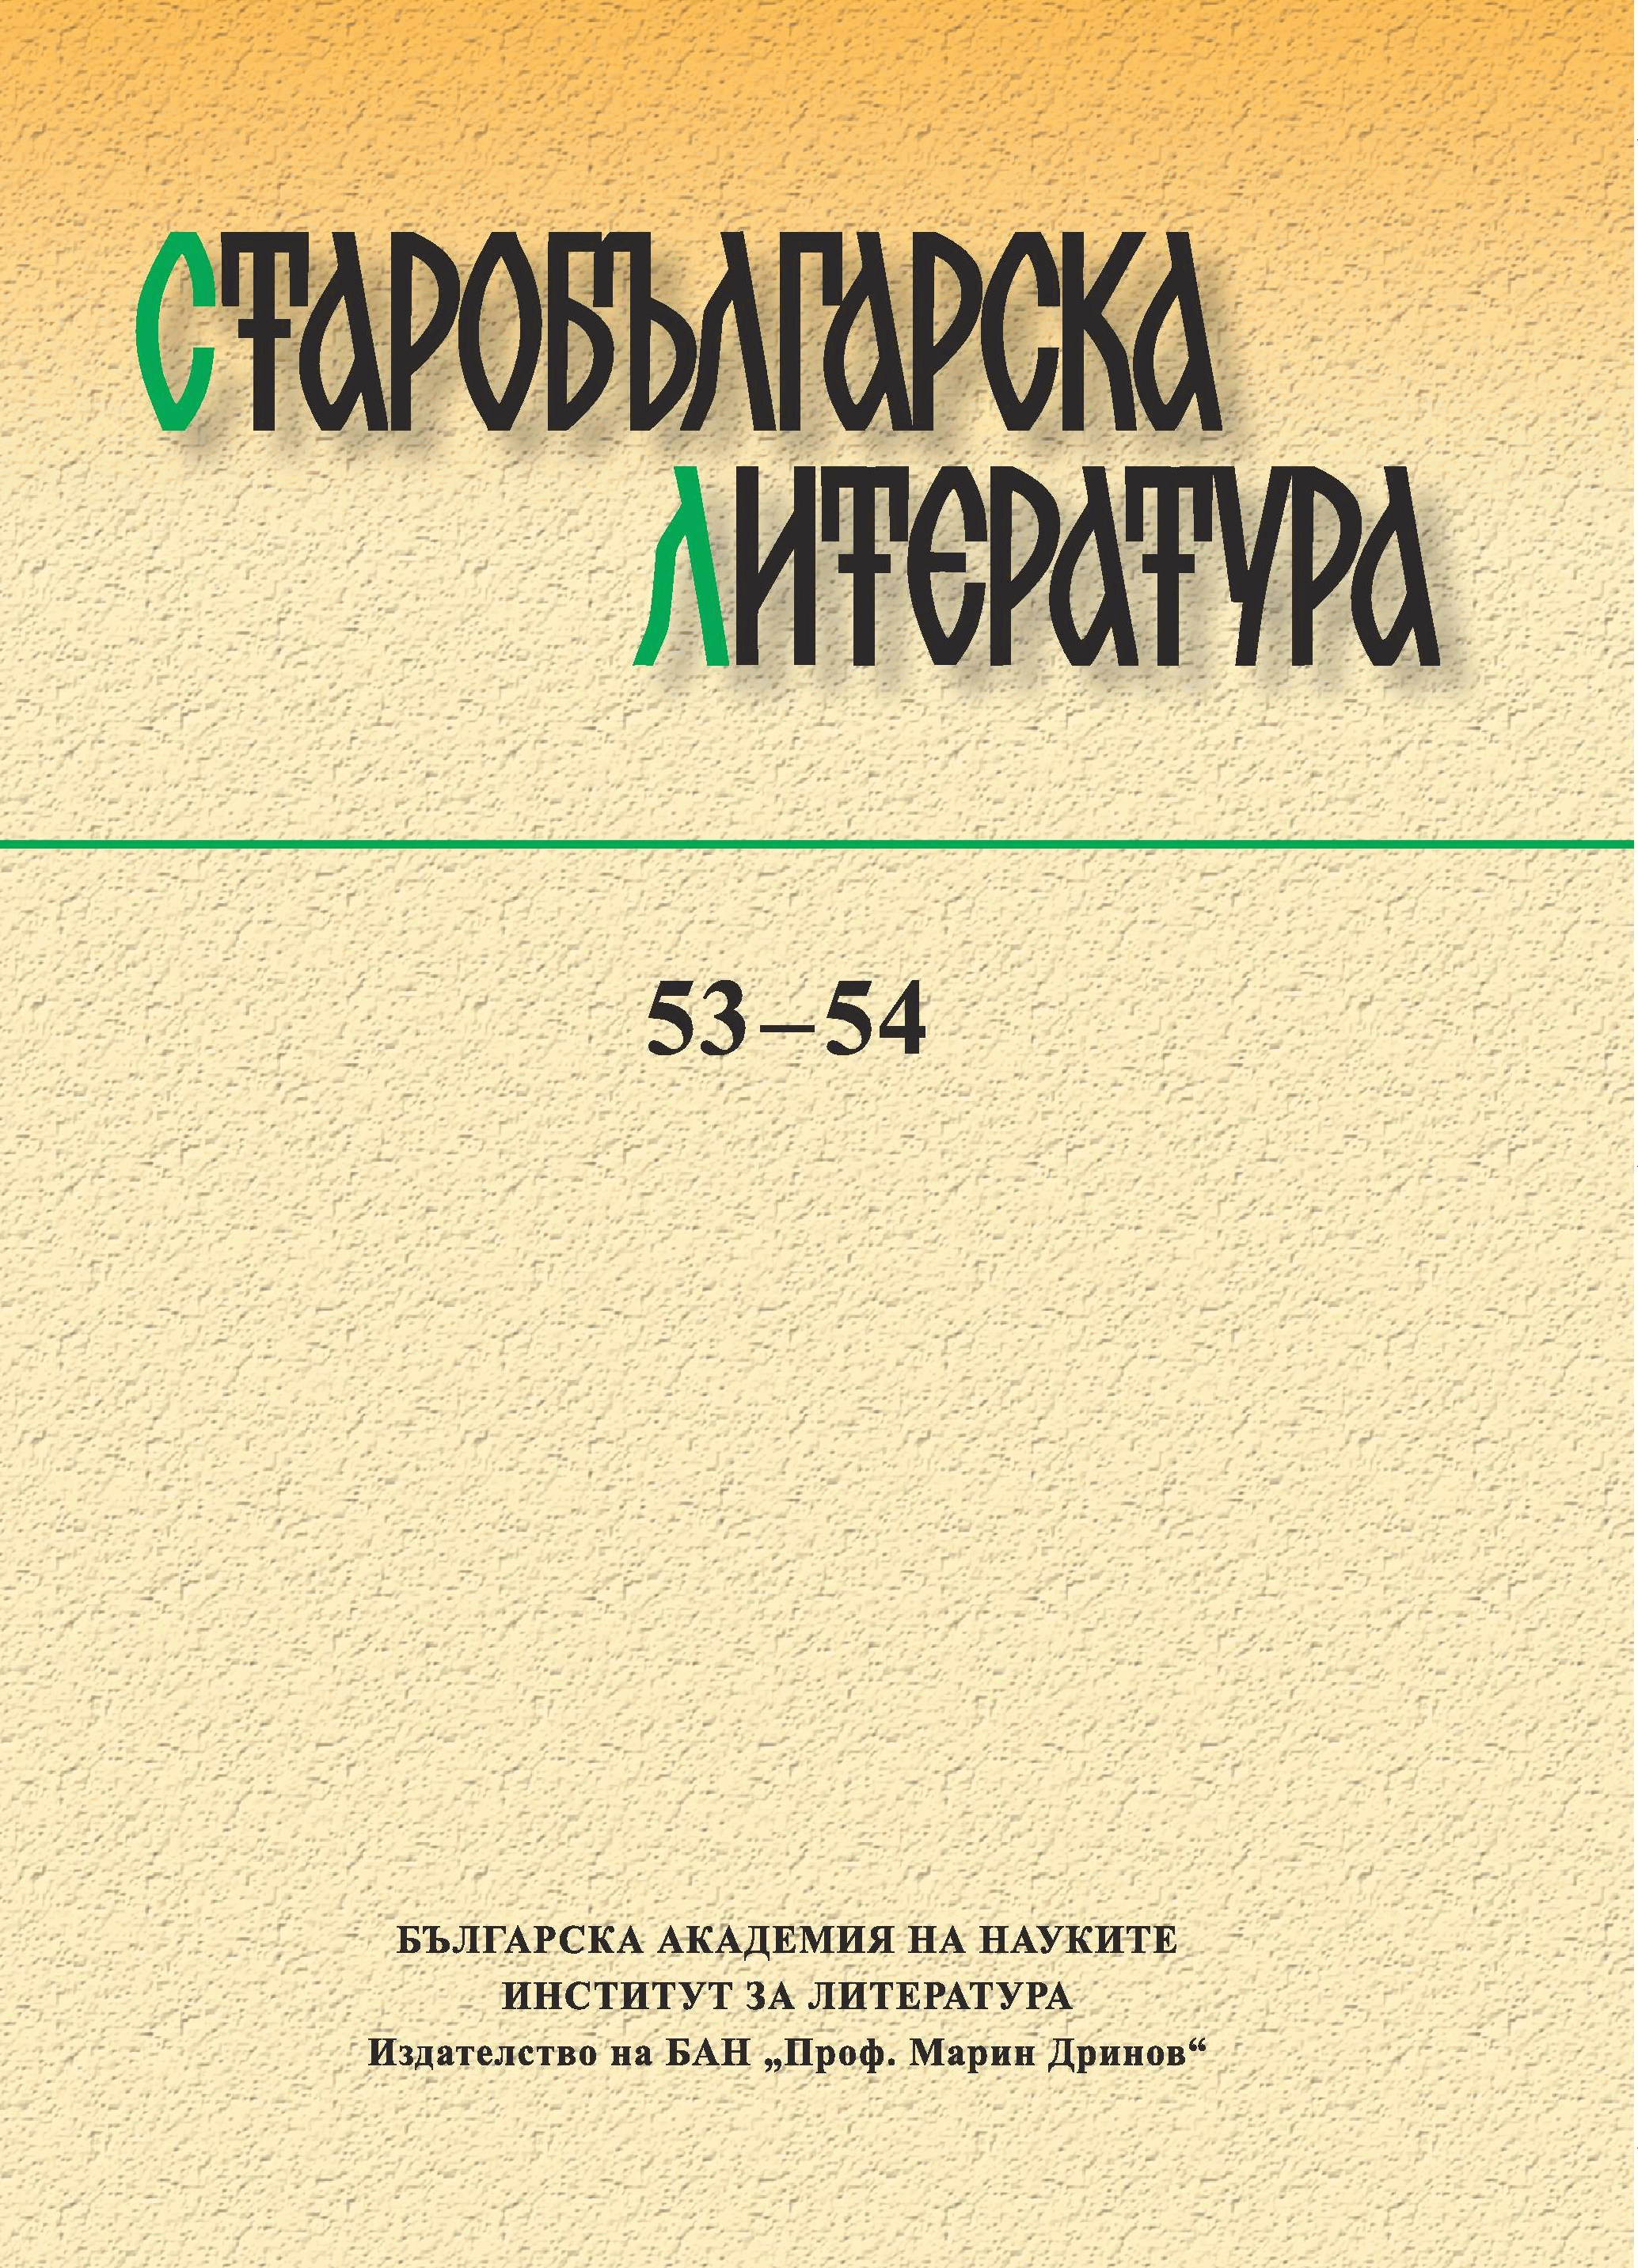 Ръкопис Sl. 156 от Библиотеката на Румънската академия и мястото му в текстовата традиция на триодните панигирици